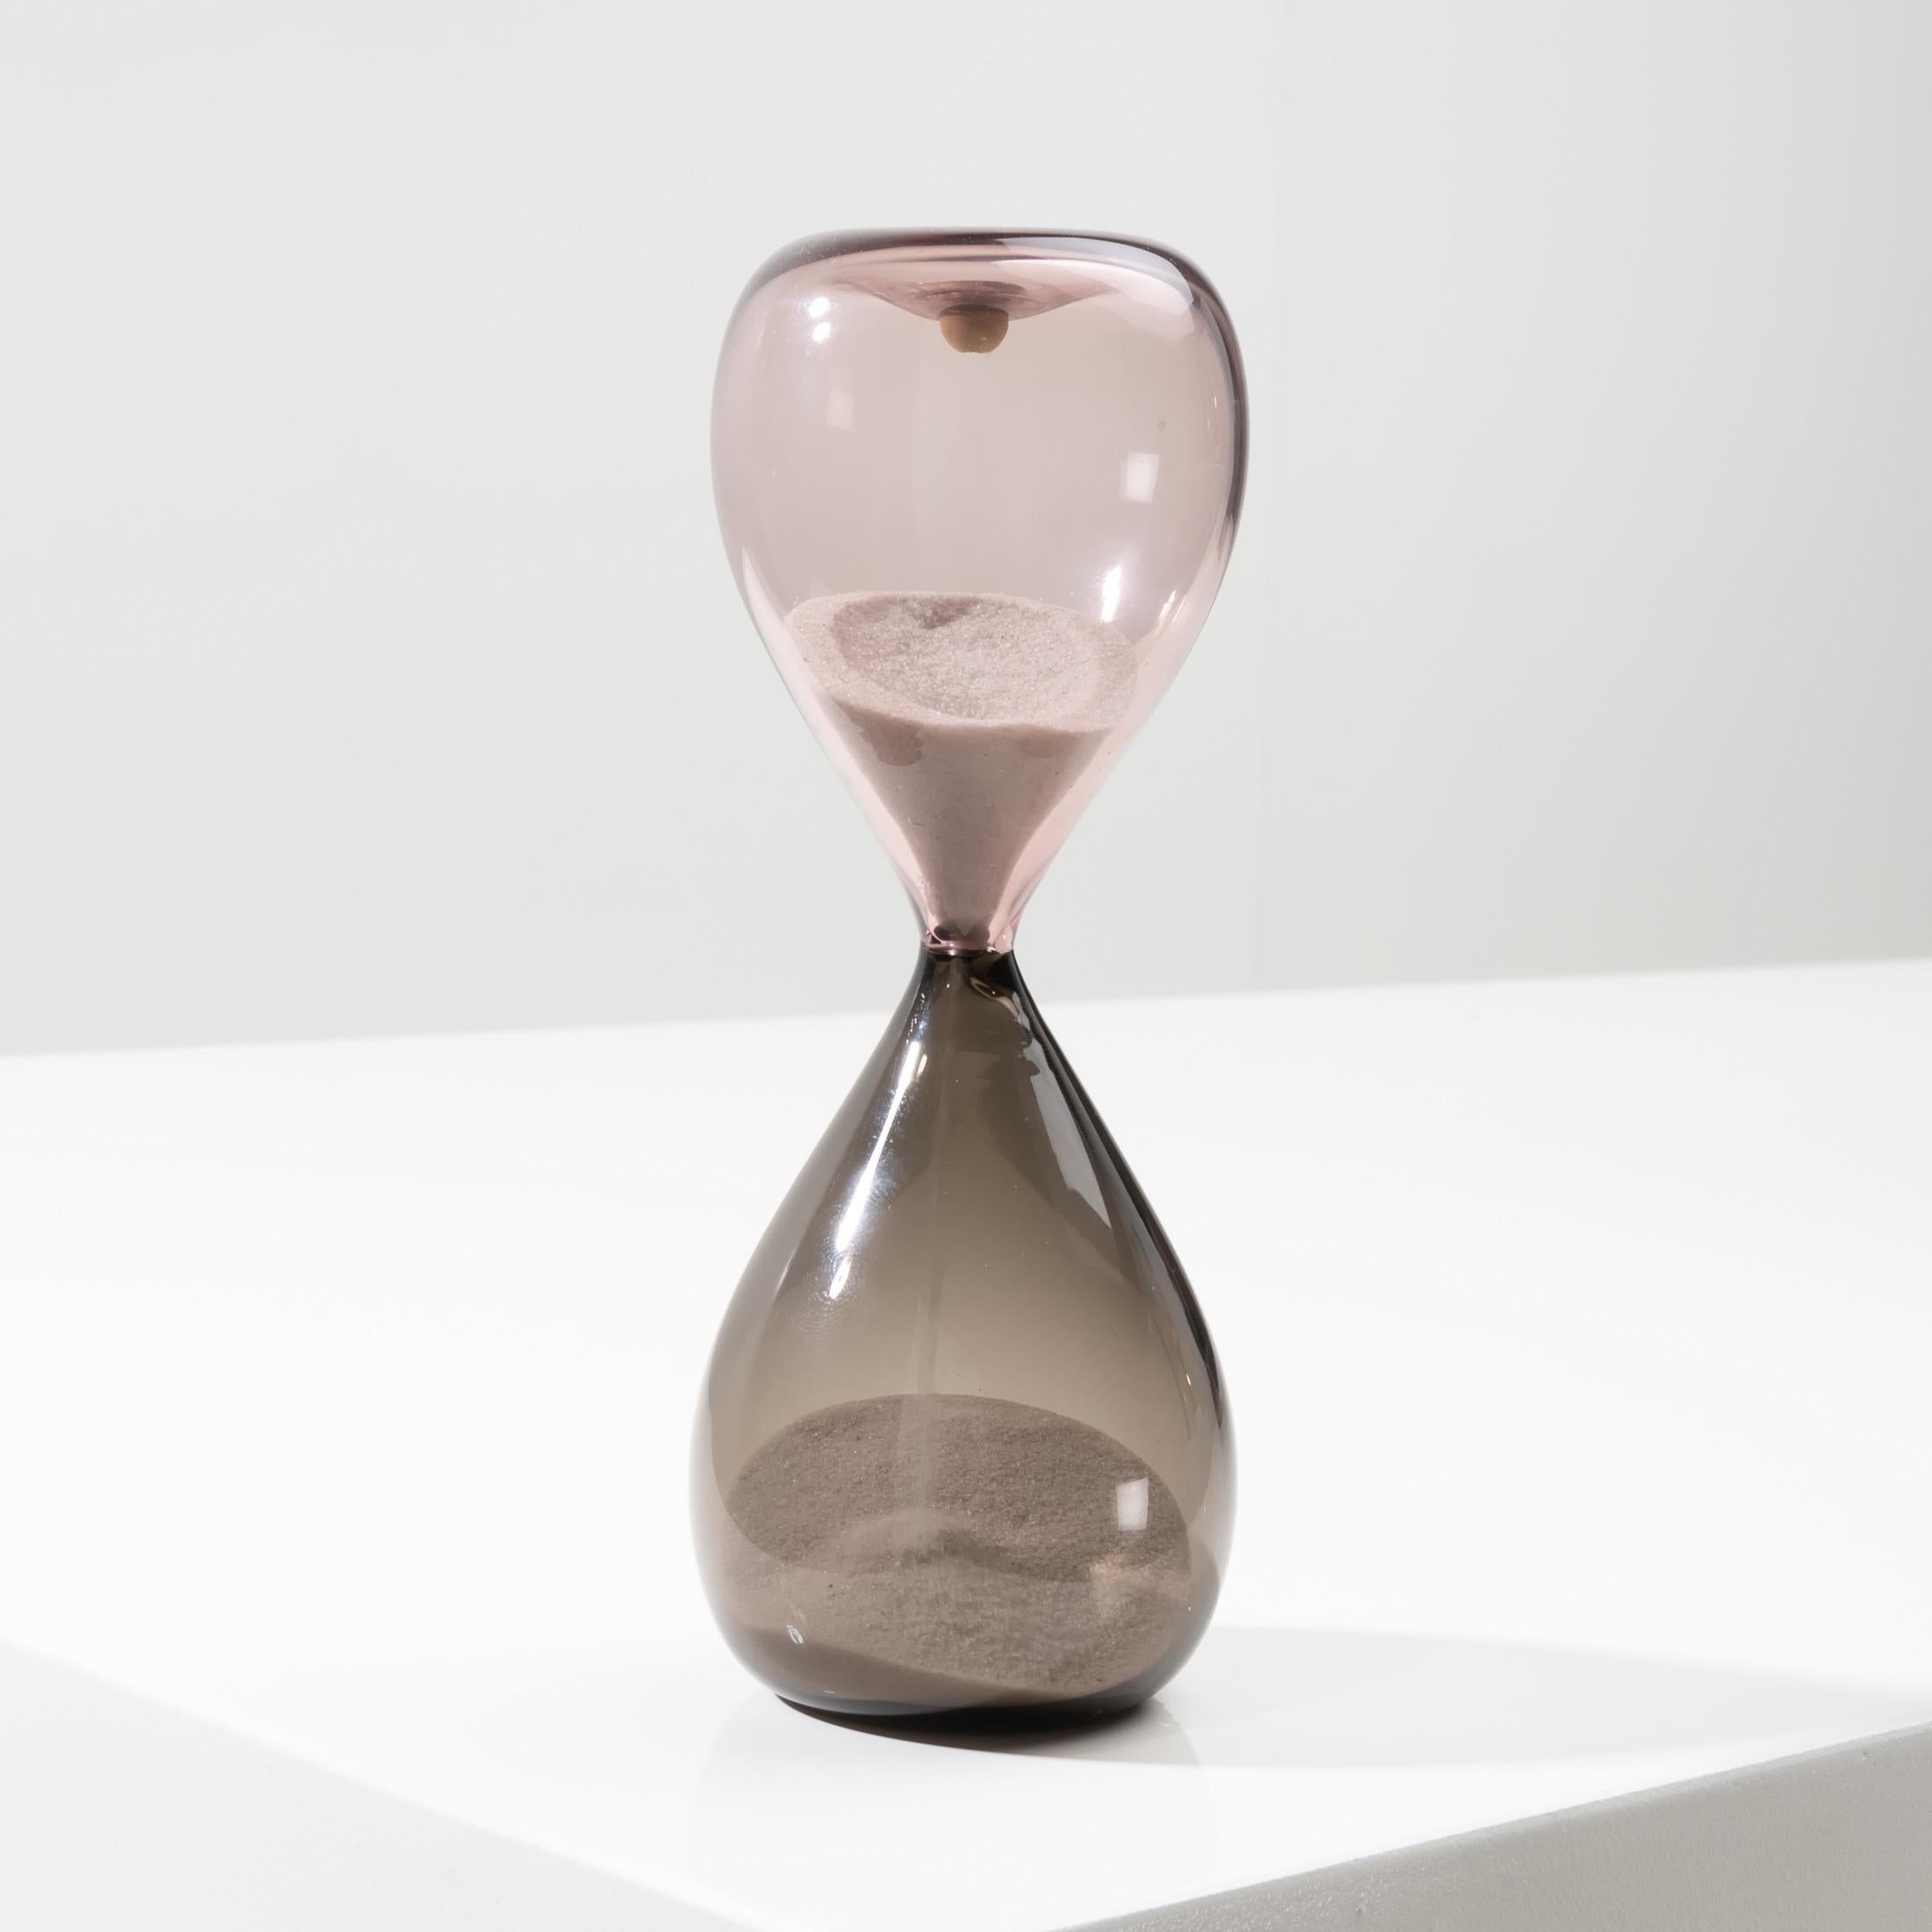 Sablier en verre soufflé bicolore (rose et gris).
Les sabliers en verre conçus par Paolo Venini en 1957 ont été exposés à la XIe Triennale de Milan la même année.
Réf. : Paolo Venini et son four, Marino Barovier et Carla Sonego, Skira. P.316